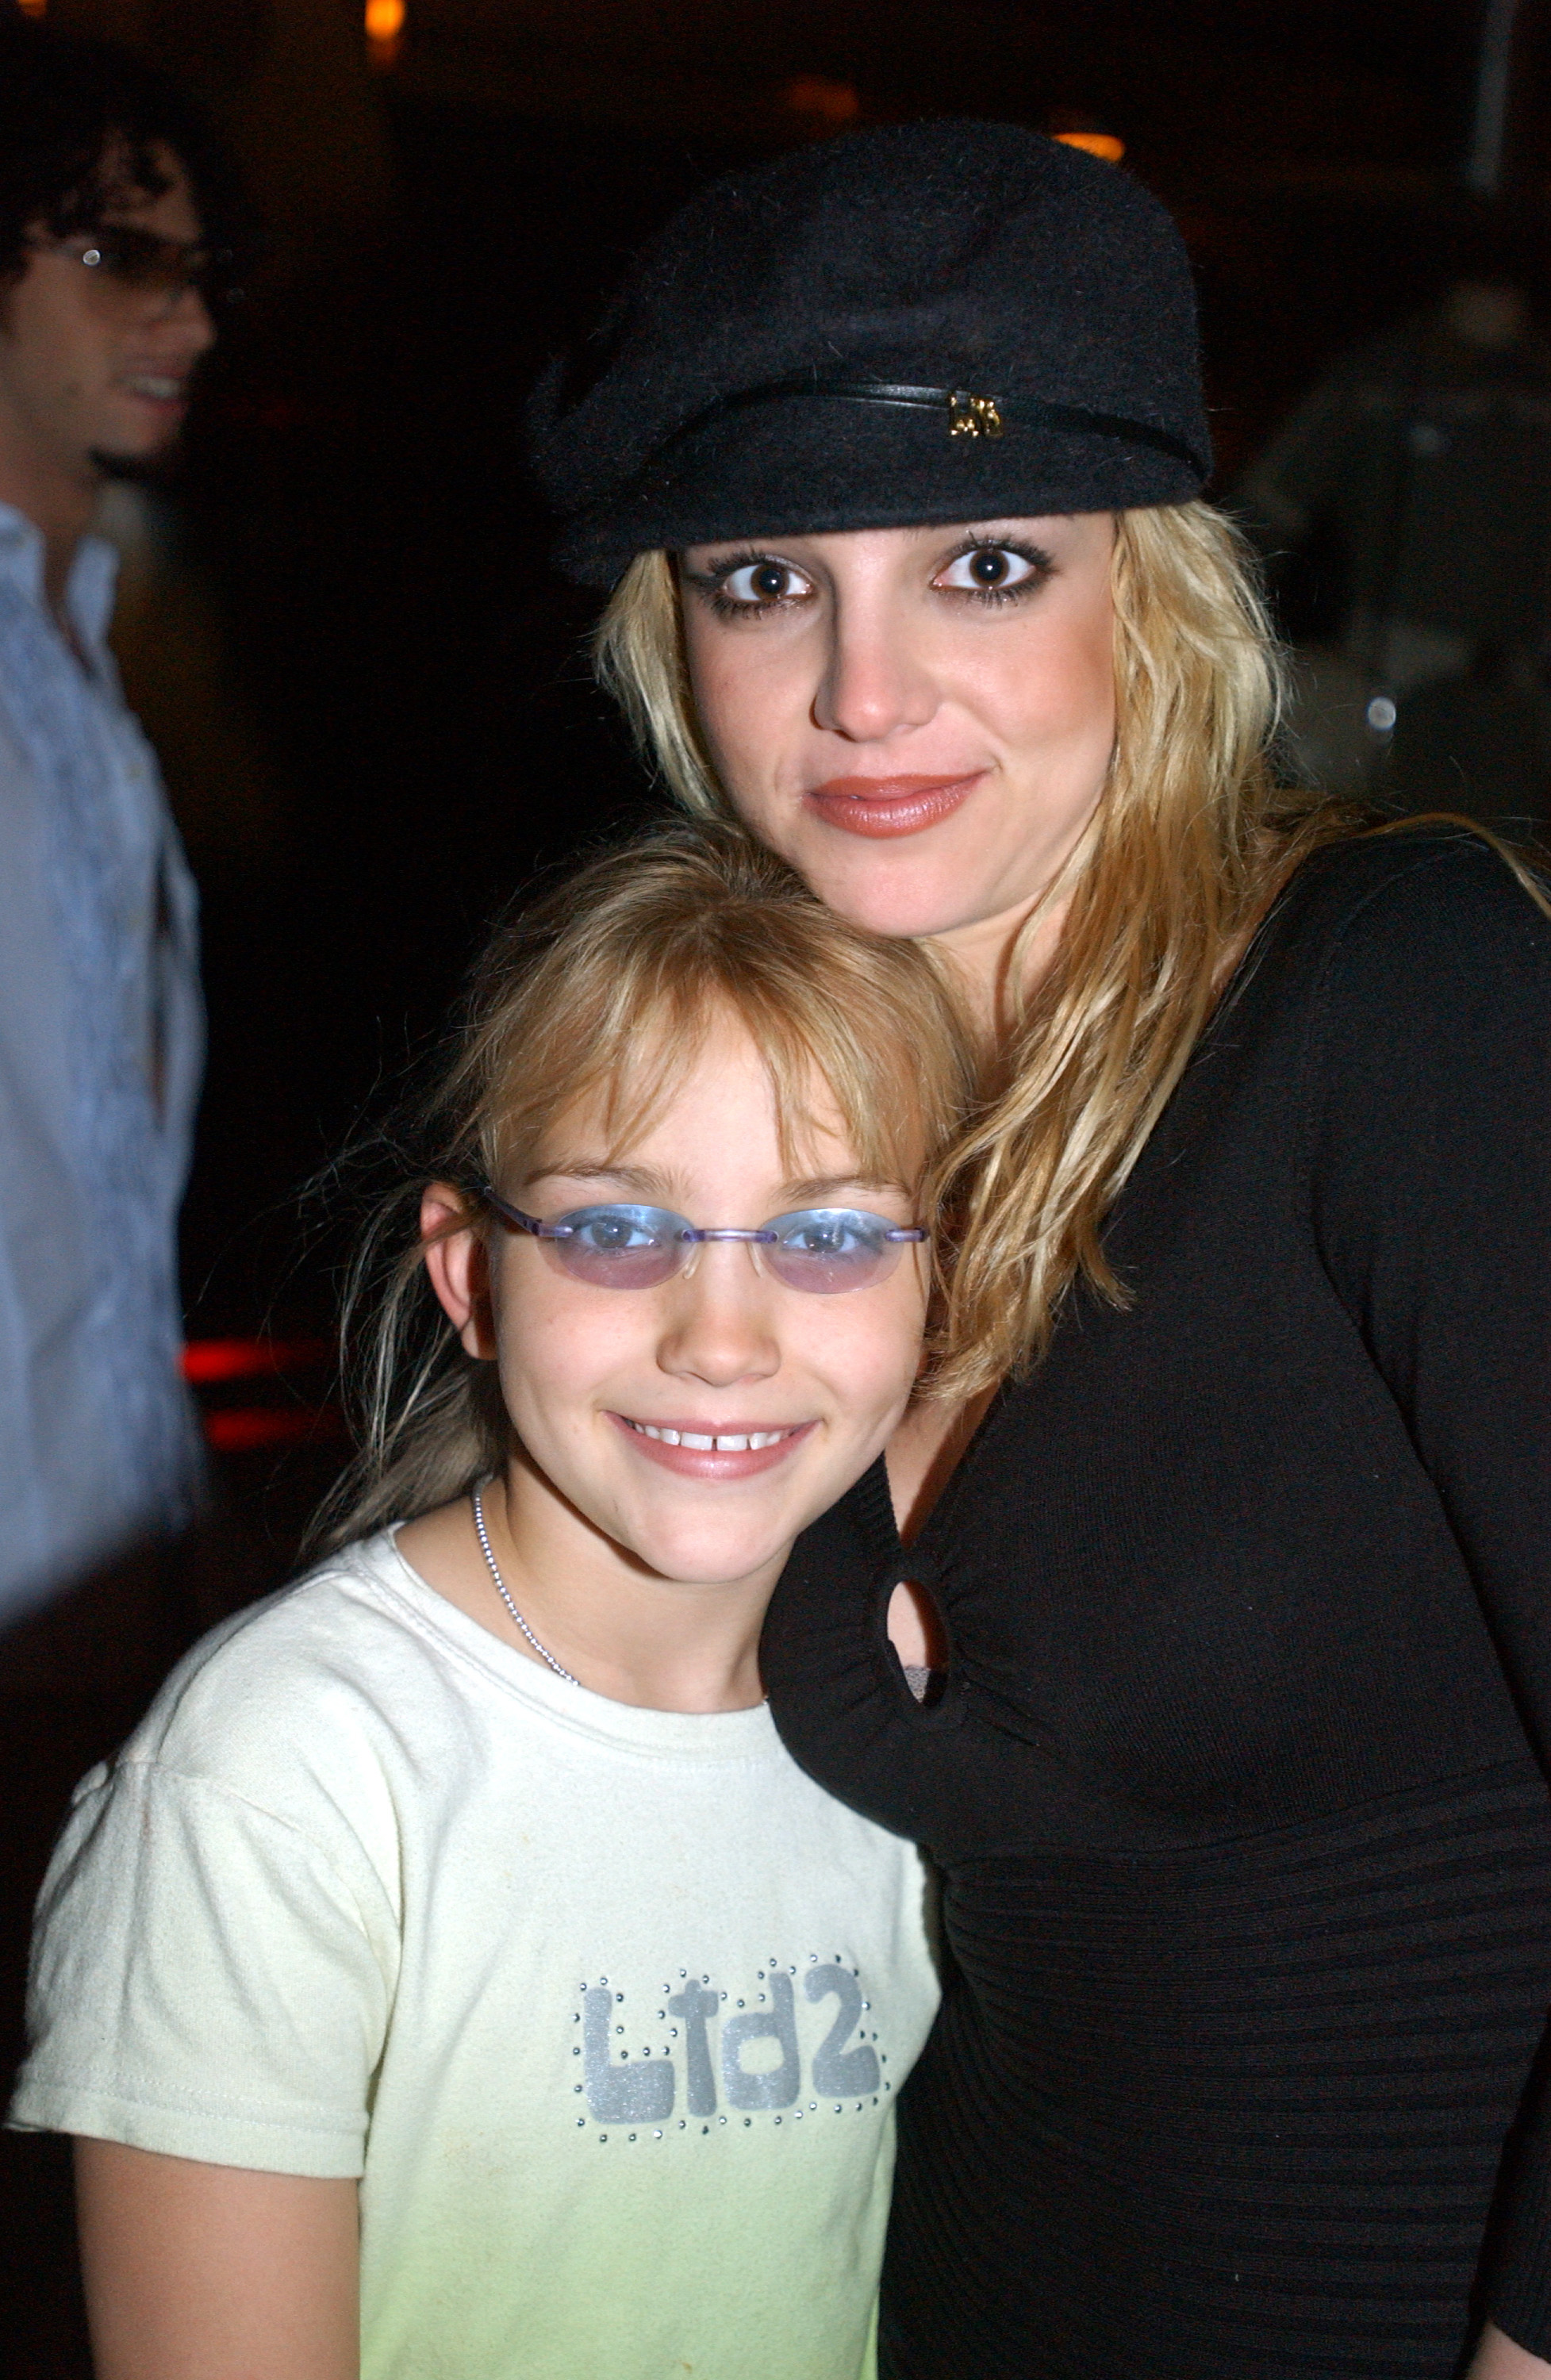 Britney Spears and sister Jamie Lynn Spears in 2001